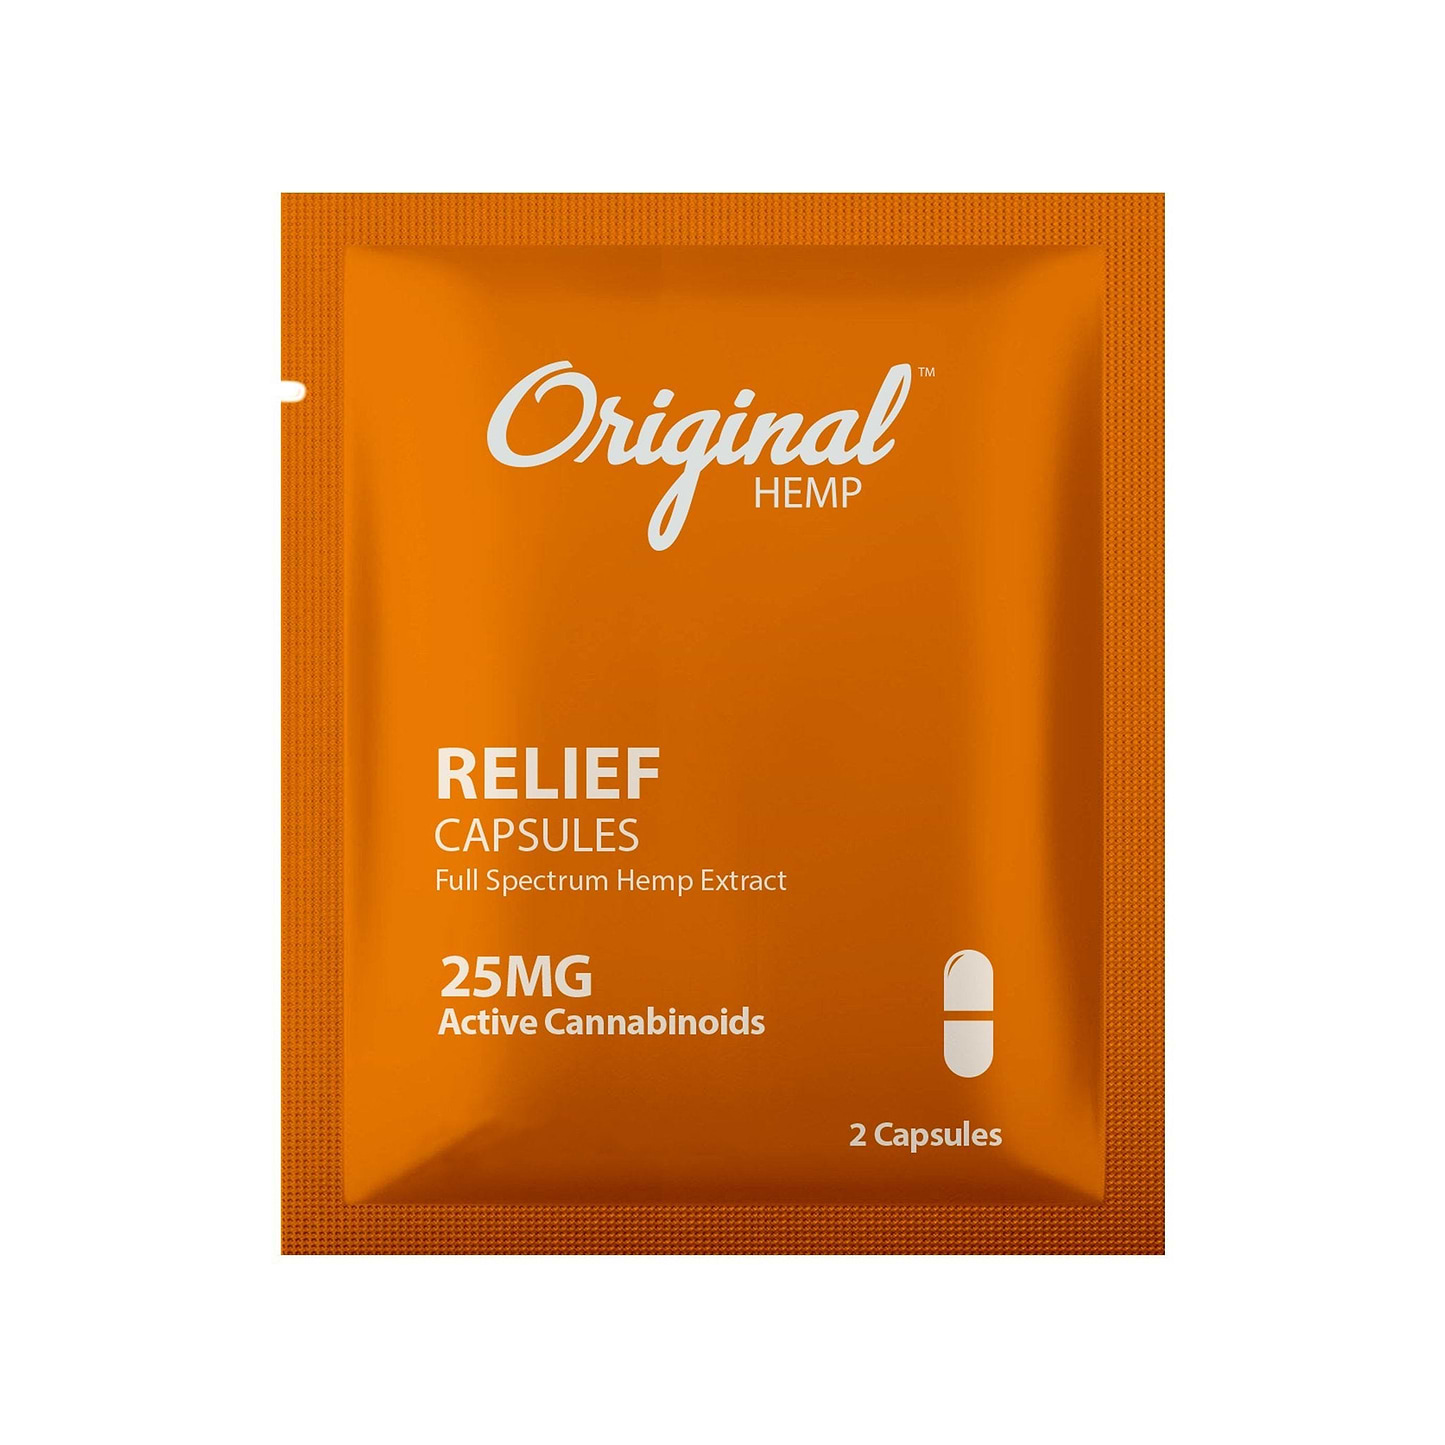 Original Hemp - Daily Dose Capsules - 25mg 25mg / Relief